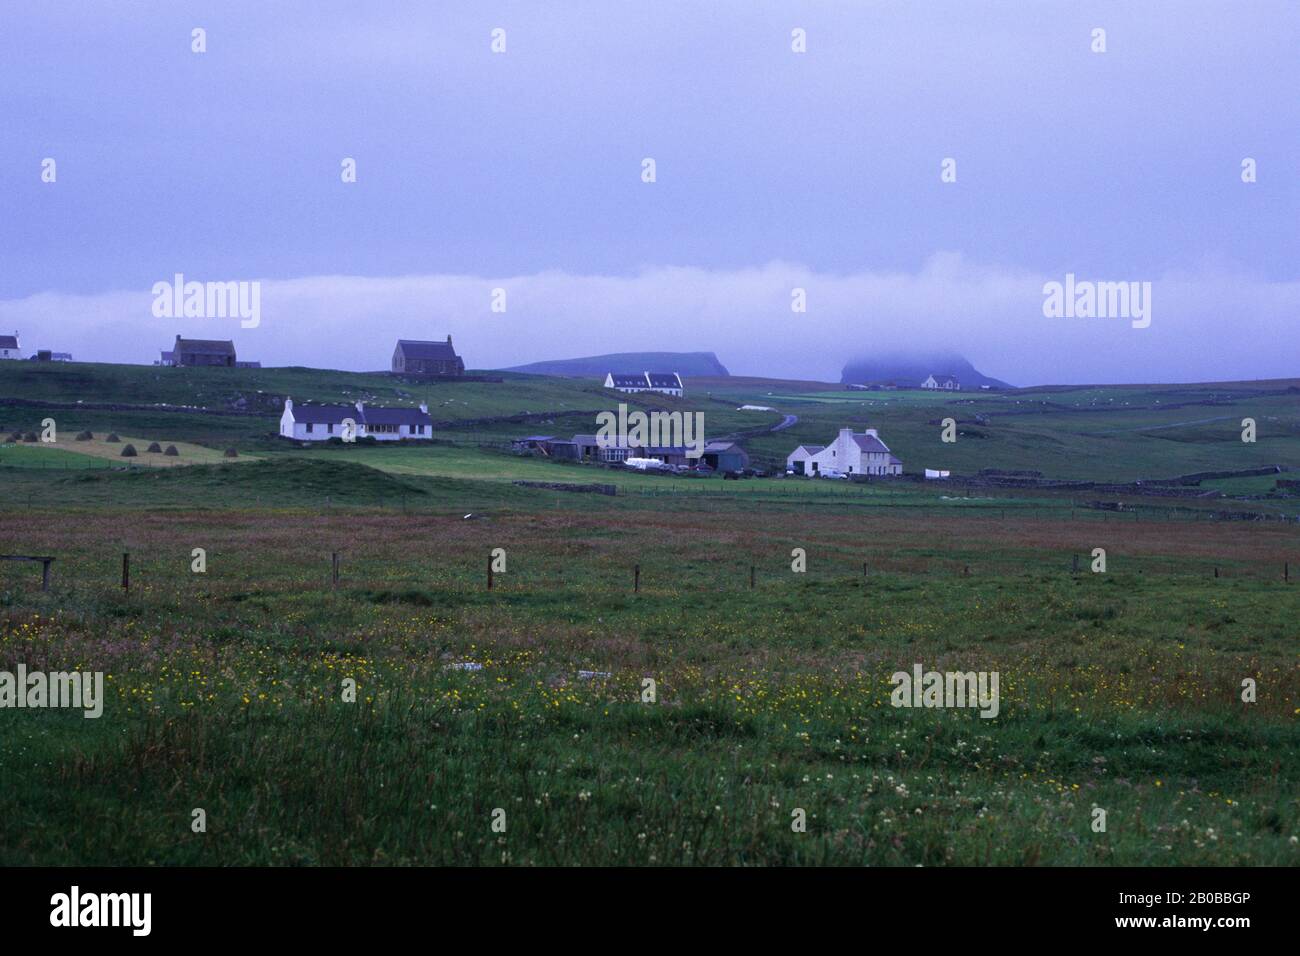 SHETLAND ISLANDS, FAIR ISLE, LANDSCAPE WITH FARMS Stock Photo